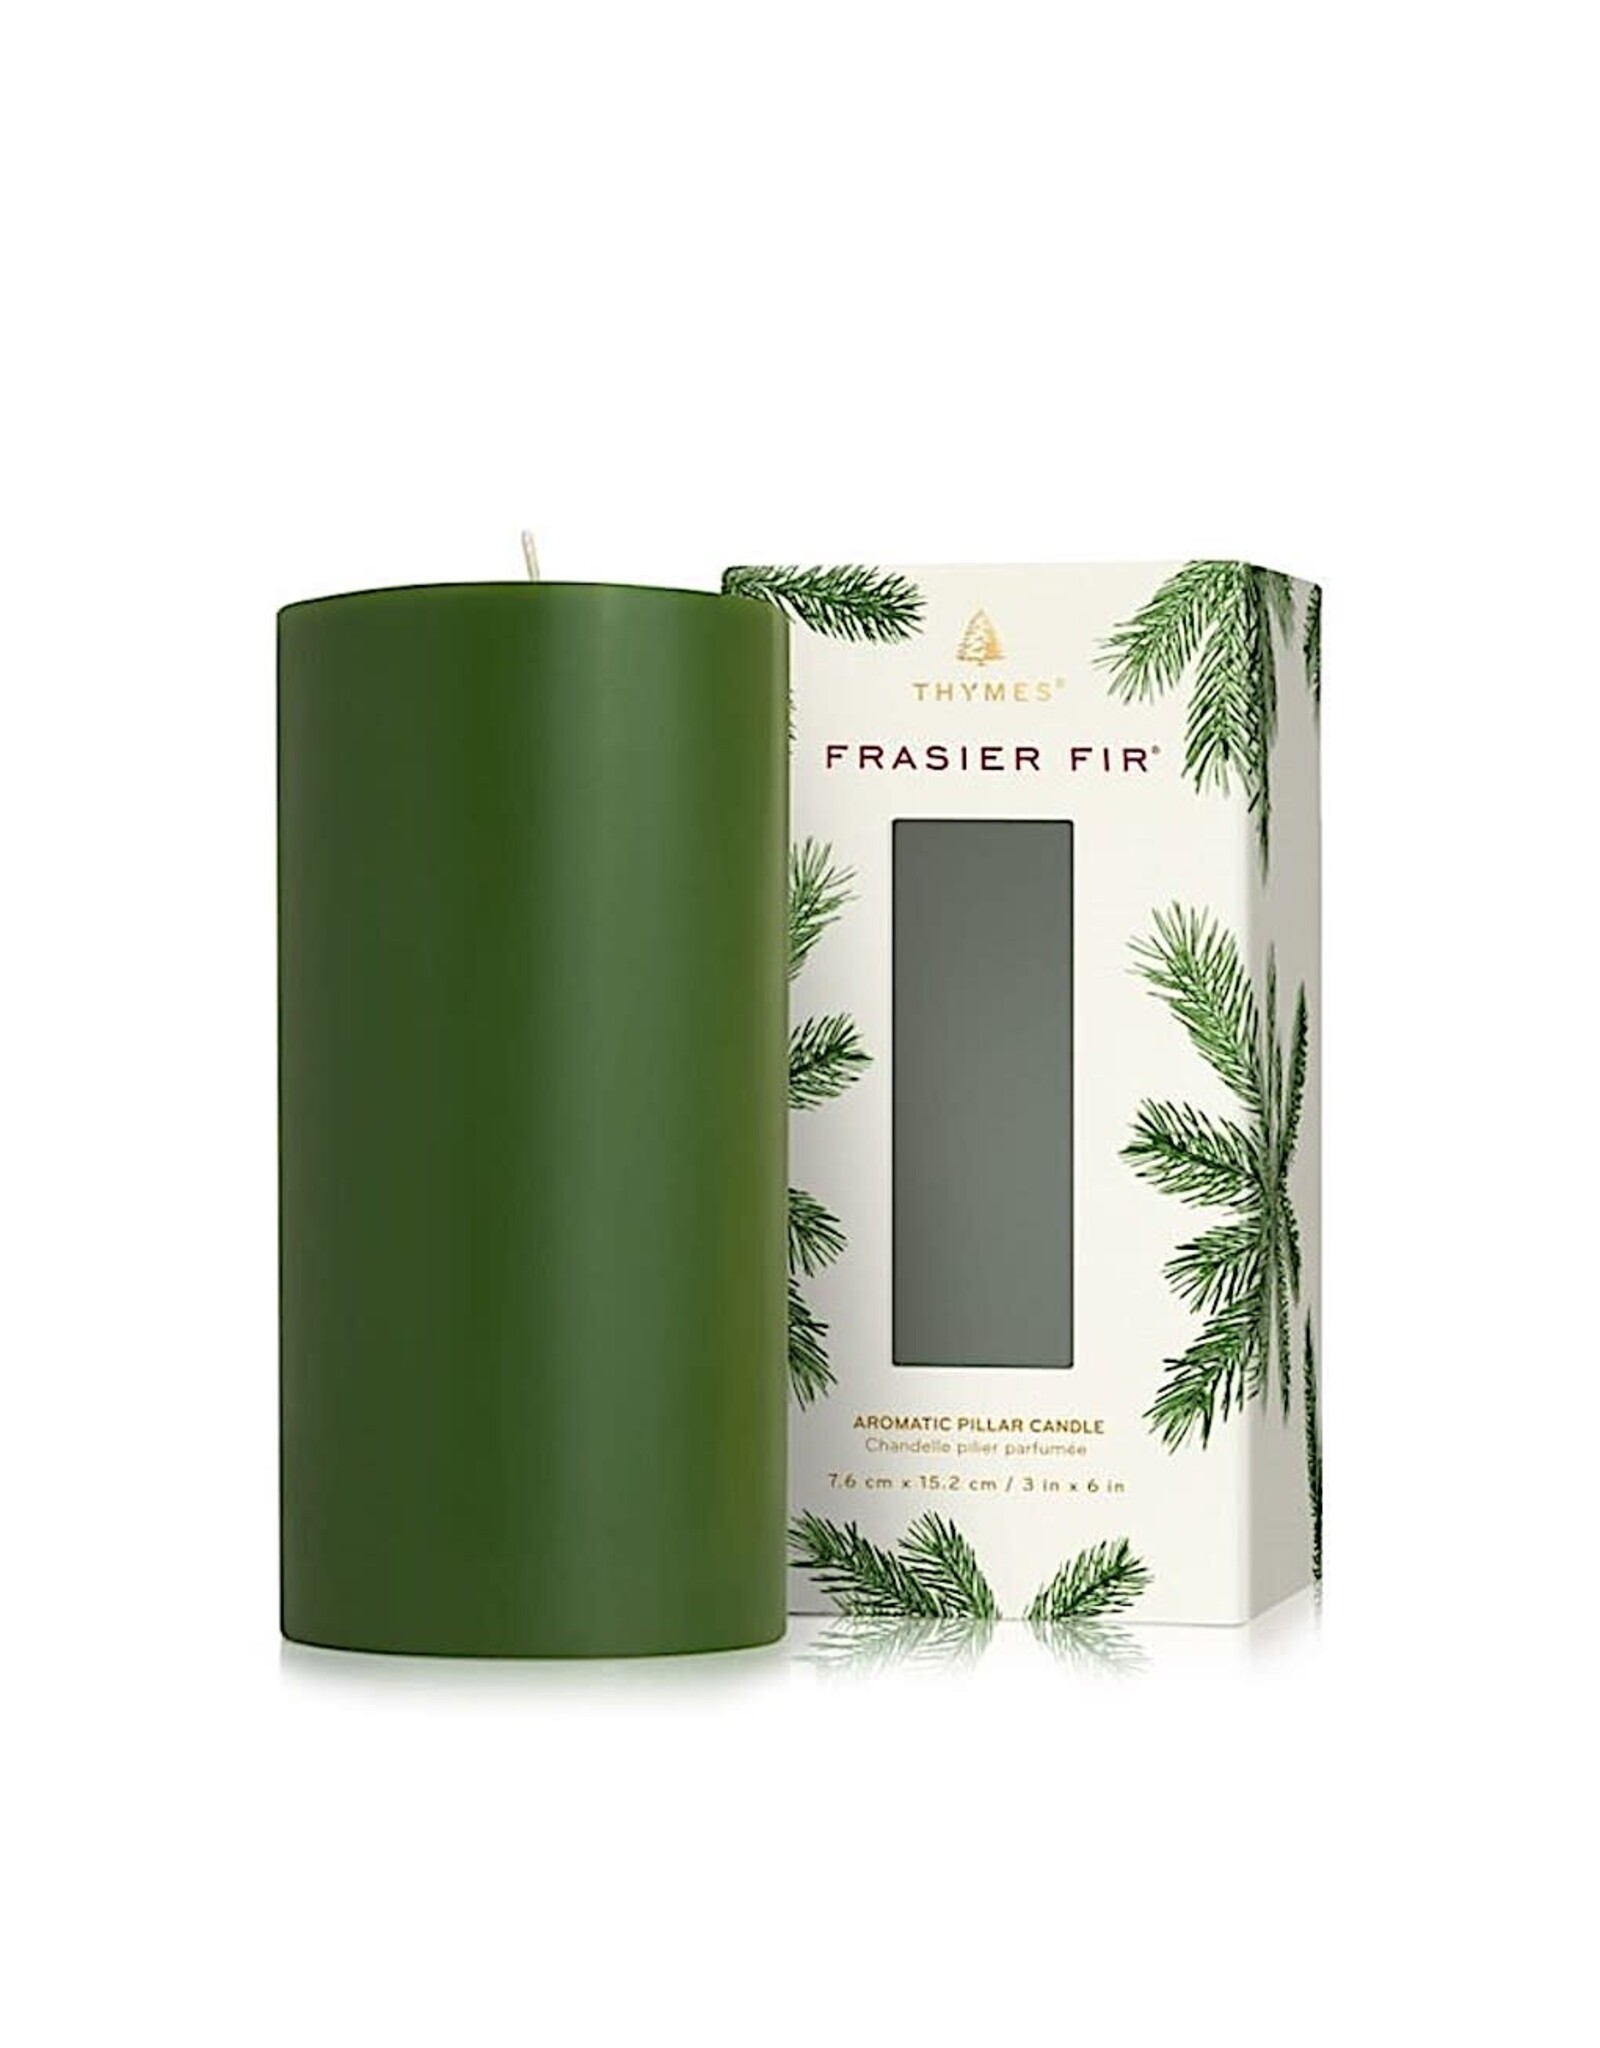 Frasier Fir Pillar Candles 3x6 Green Pillar Candle